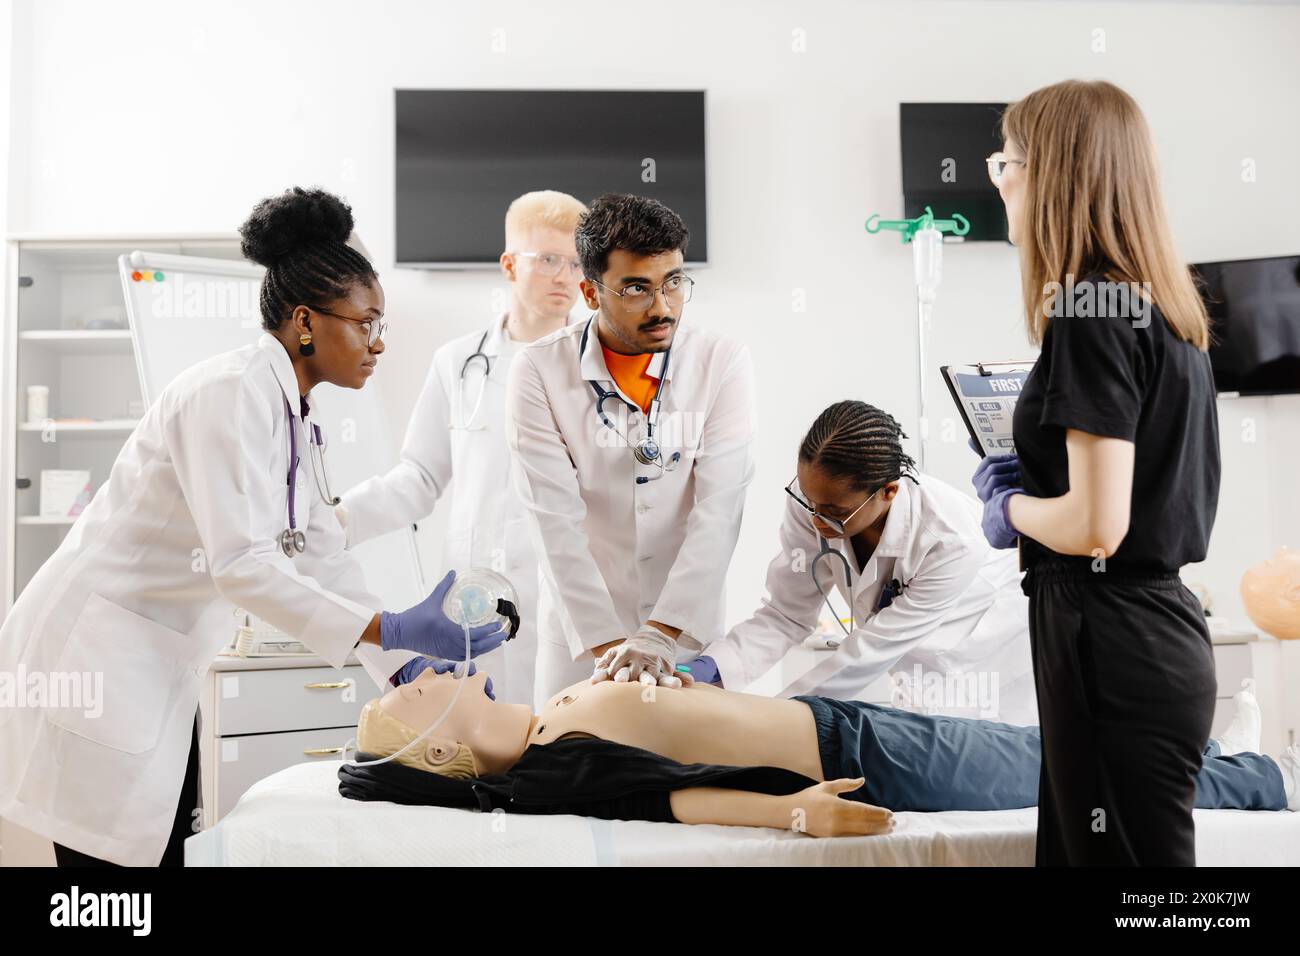 Un groupe de médecins en manteau blanc conversant avec un patient assis sur une table d'examen dans une salle clinique. Banque D'Images